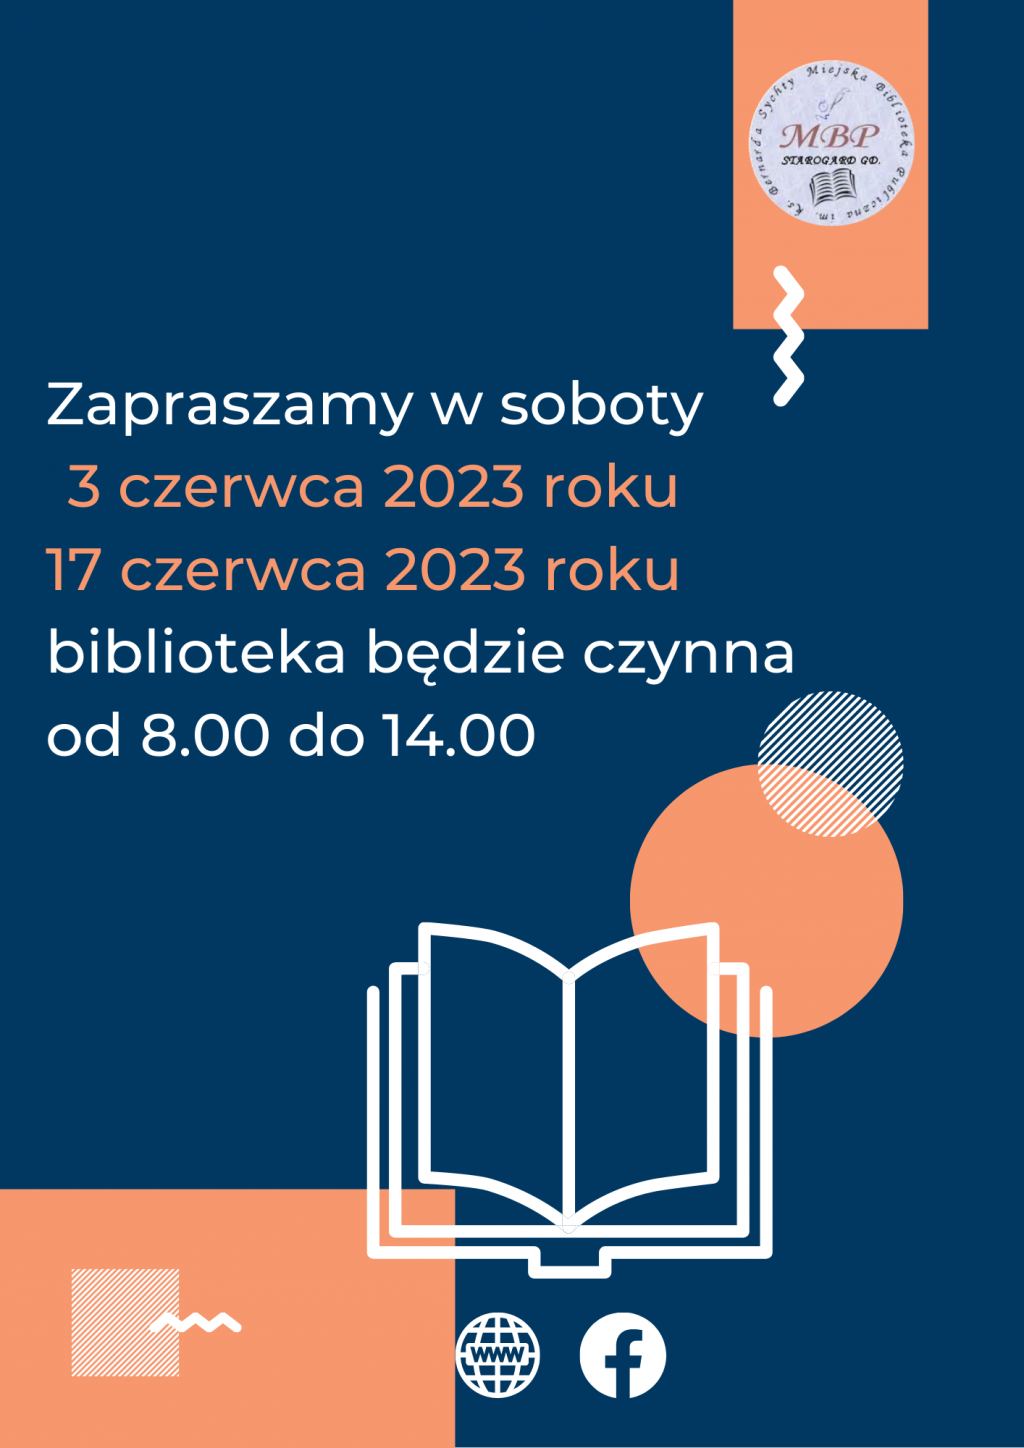 Plakat informujący o pracujących sobotach: 3 czerwca 2023 roku i 17 czerwca 2023 roku, biblioteka będzie czynna od 8.00 do 14.00. Miejska Biblioteka Publiczna w Starogardzie Gdańskim.